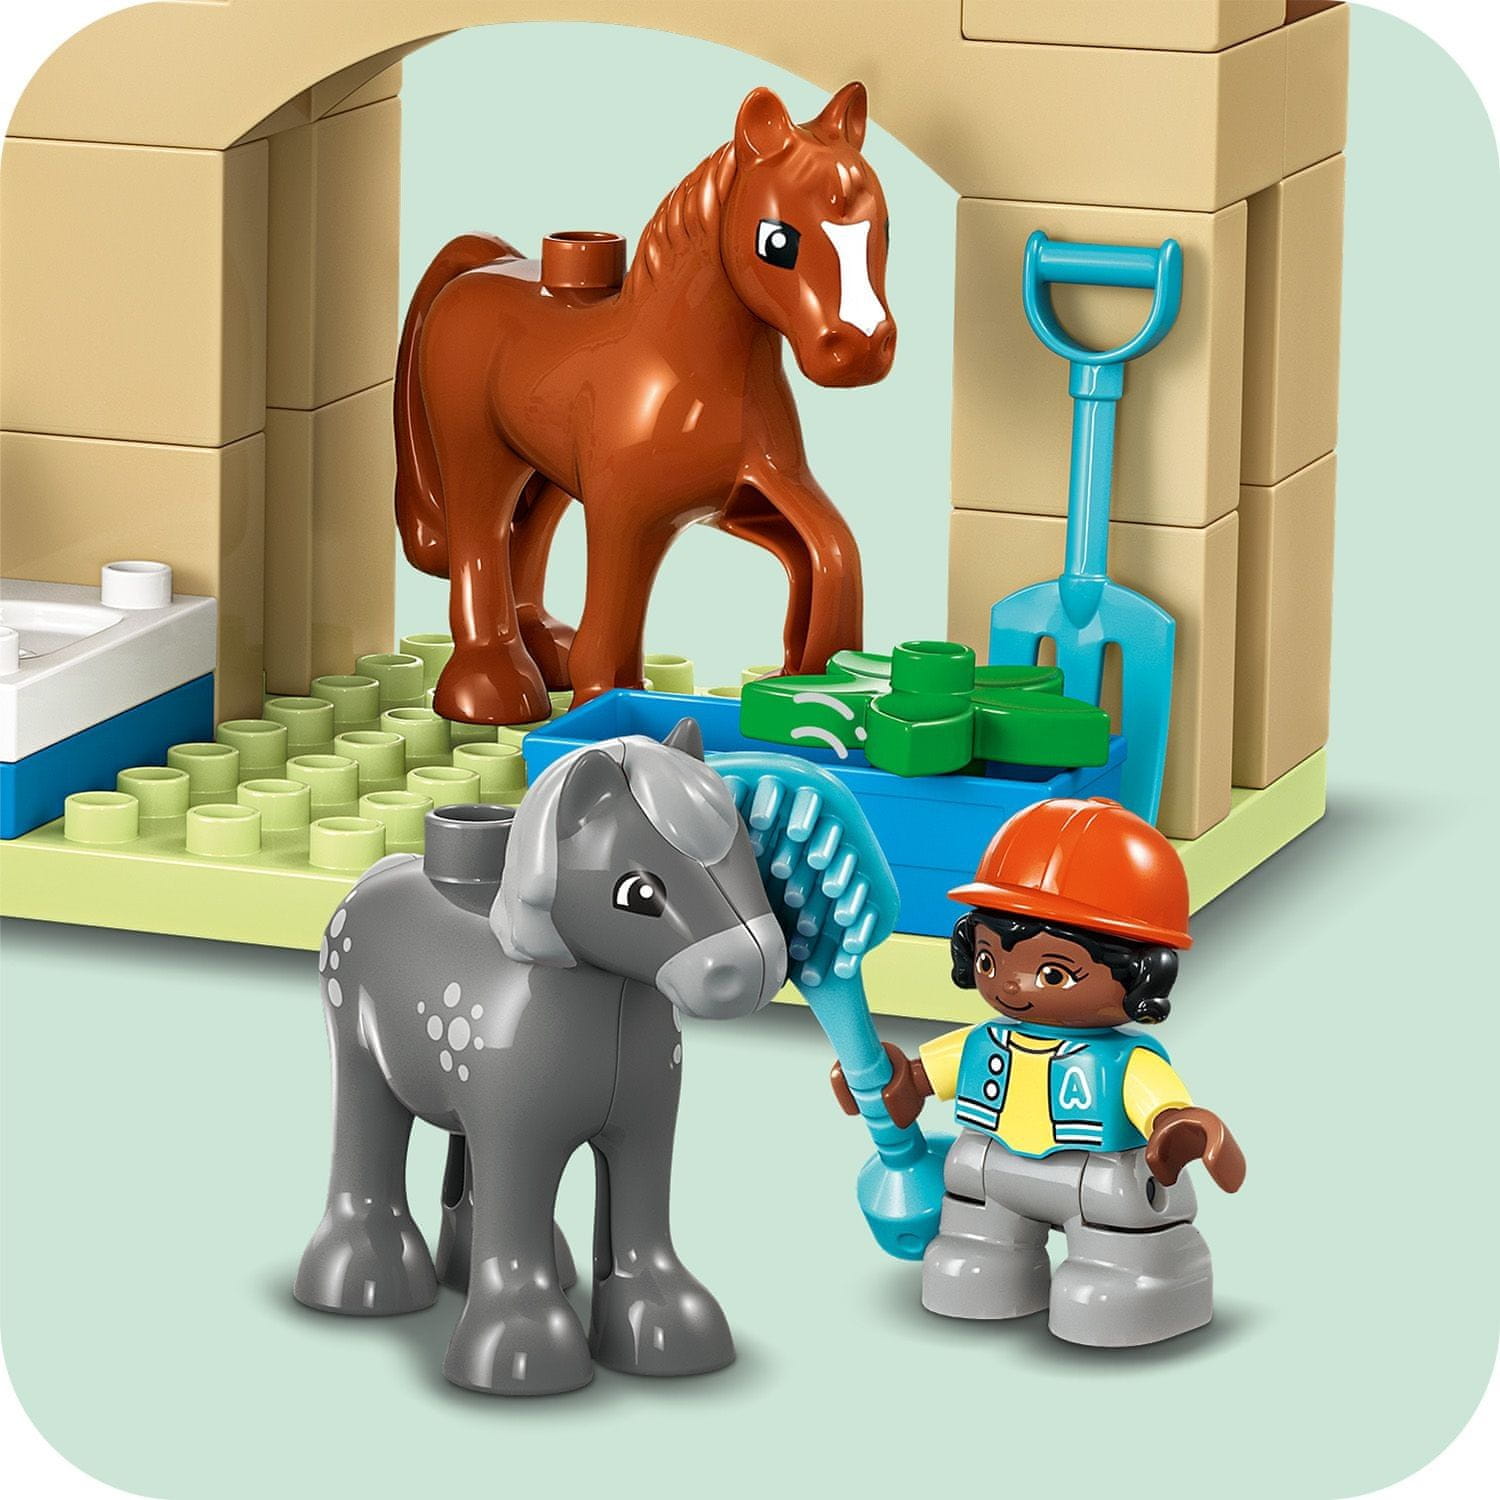 LEGO DUPLO 10416 Péče o zvířátka na farmě